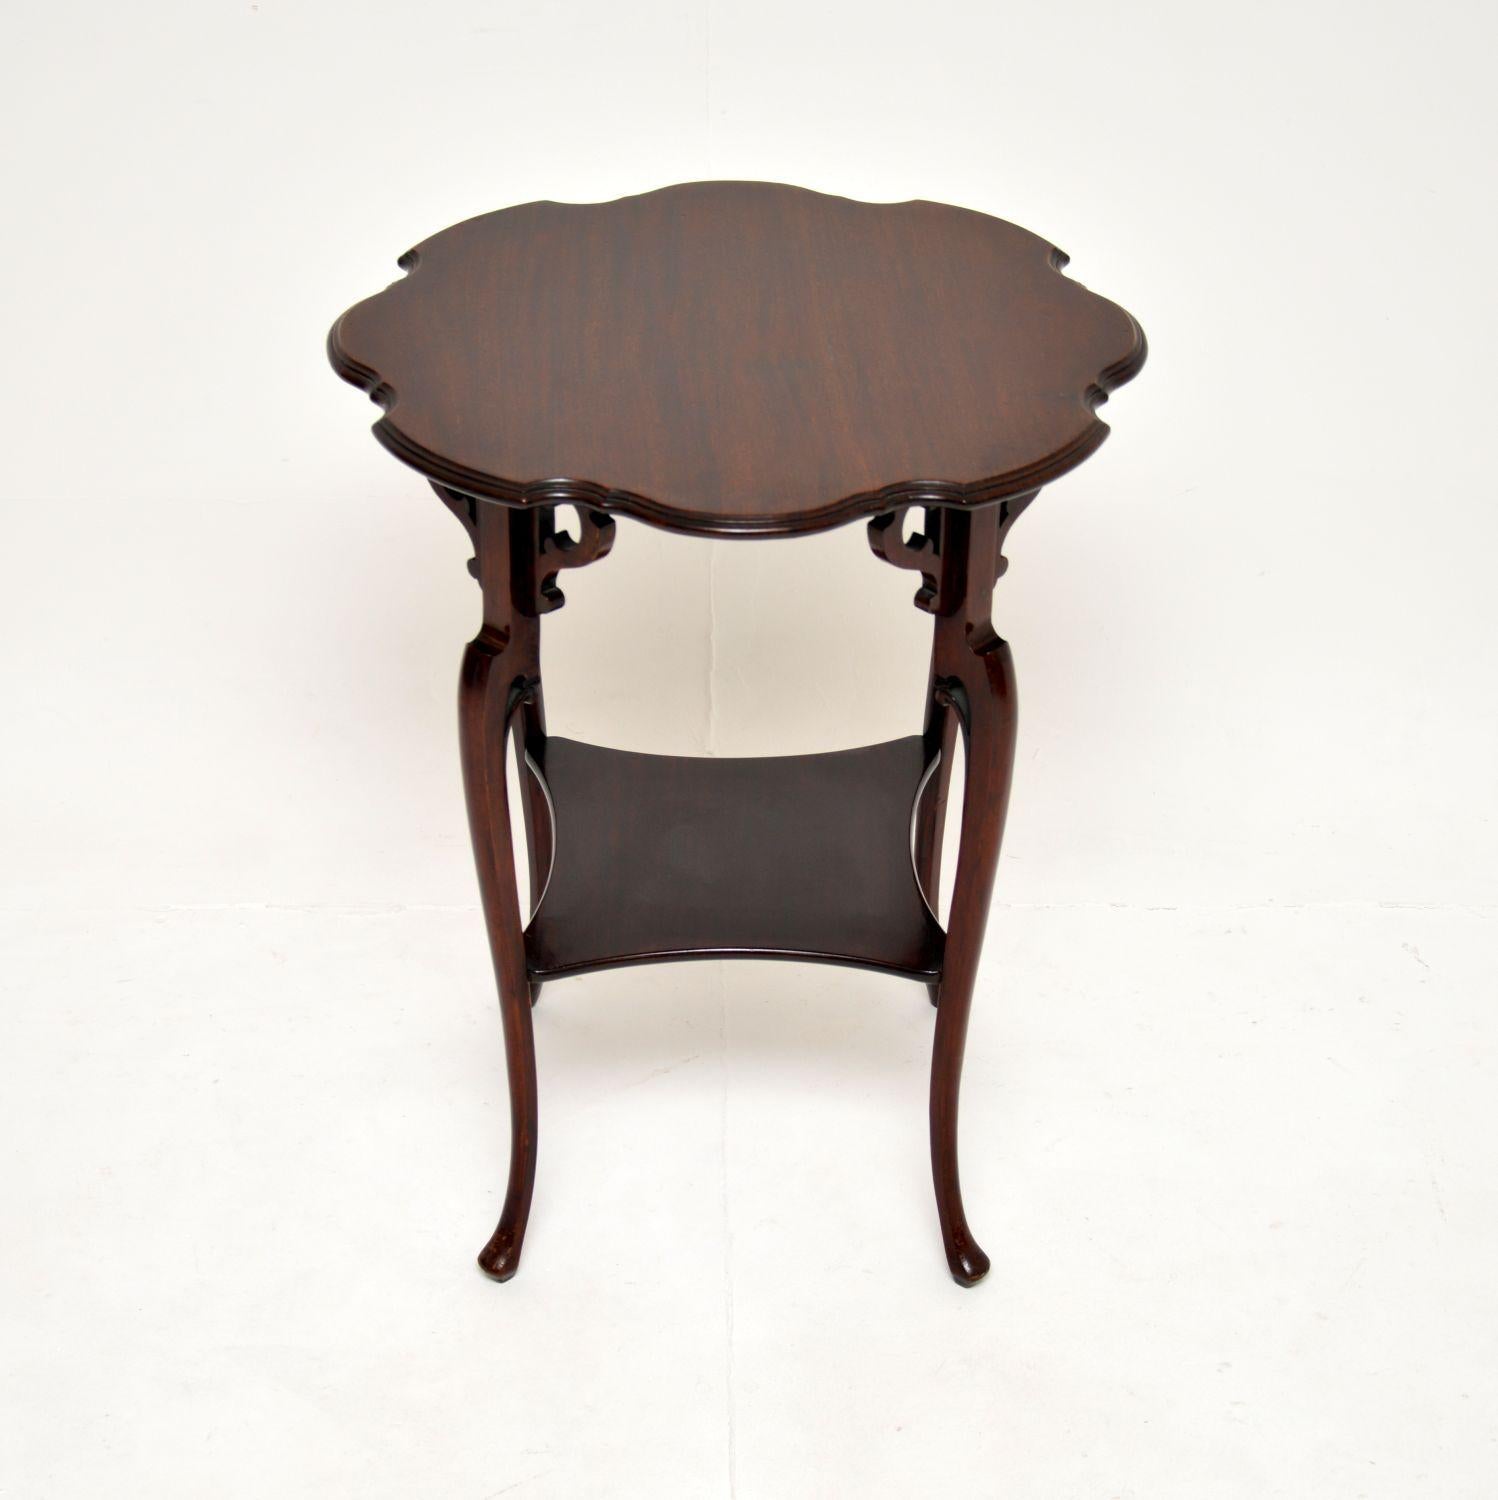 Une belle table d'appoint ancienne de l'époque édouardienne. Fabriqué en Angleterre, il date d'environ la période 1900-1910.

Il est d'excellente qualité, d'une taille utile et d'un beau design. Le plateau est joliment façonné, il comporte un étage